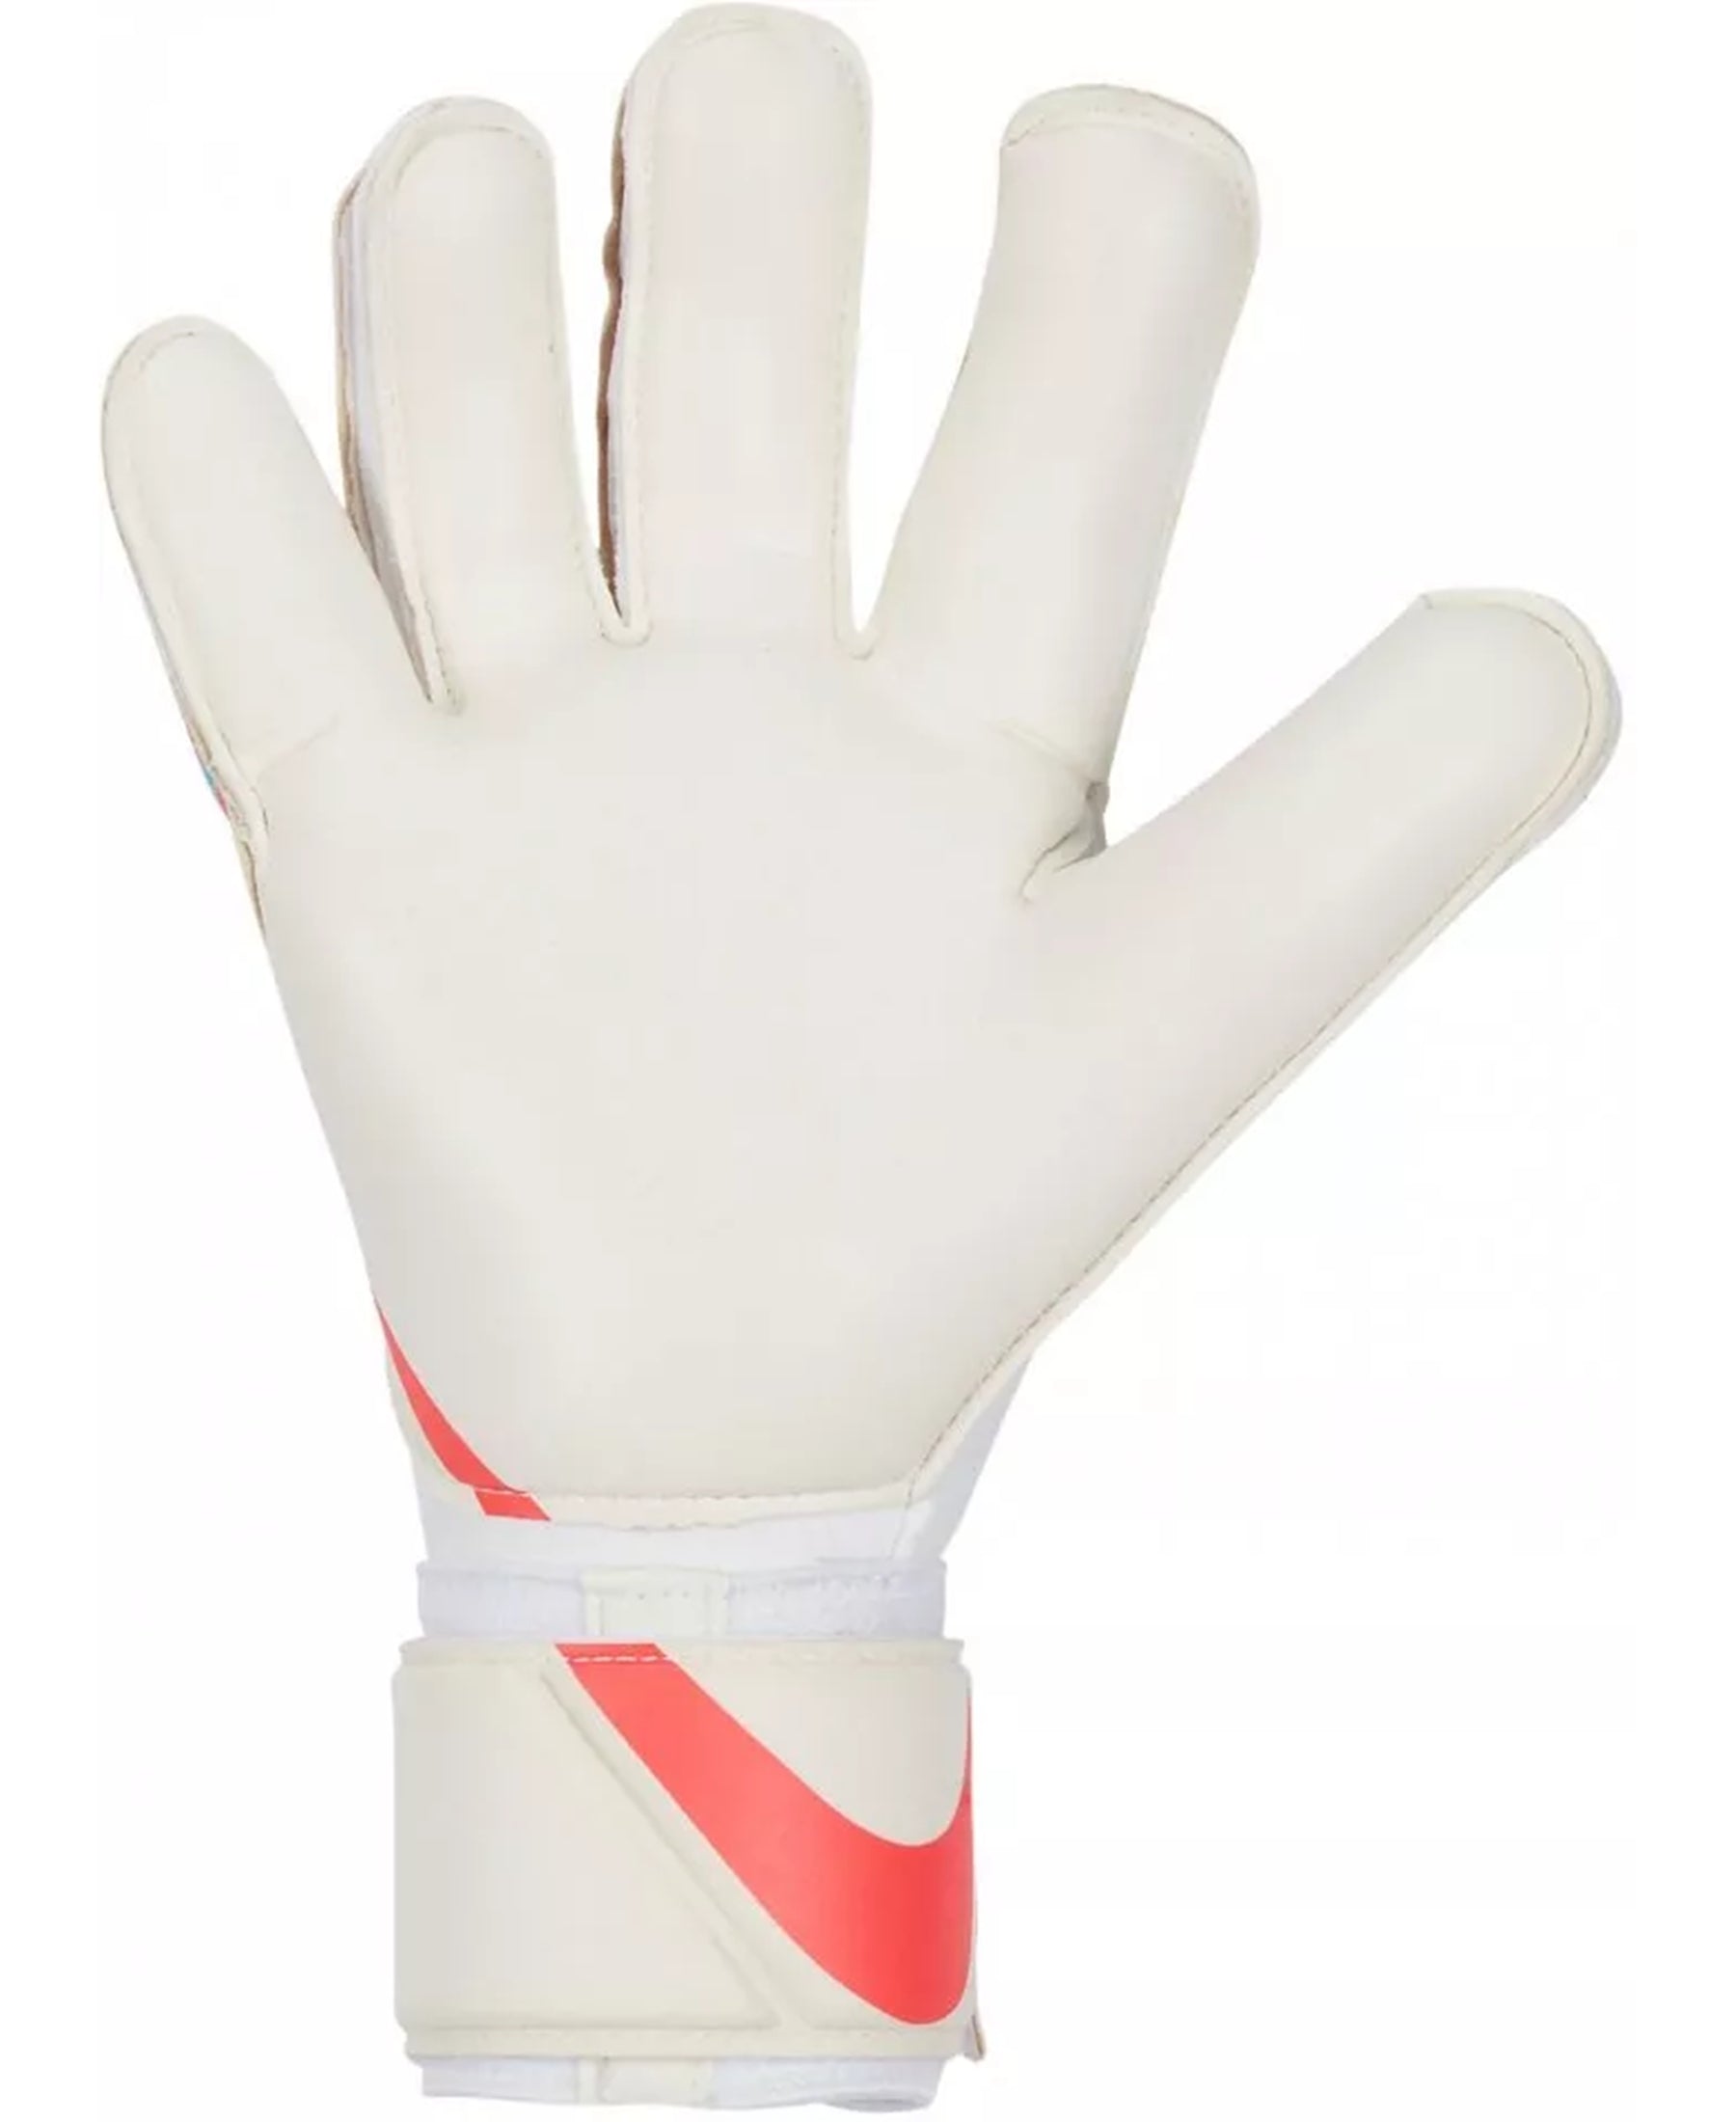 Die Nike GK Grip3 Torwarthandschuhe (Artikelnummer: CN5651-102) bieten hervorragende Leistung für Torhüter. Die Grip3-Technologie mit speziellen Einsätzen auf den Fingern gewährleistet optimalen Halt und bessere Ballkontrolle. Die gepolsterte Handfläche dämpft Aufprälle und schützt bei Paraden. Mit verstellbarem Verschluss für bequeme Passform und atmungsaktivem Material sind sie ideal für Training und Wettkampf. Holen Sie sich diese Handschuhe bei SHOP4TEAMSPORT.